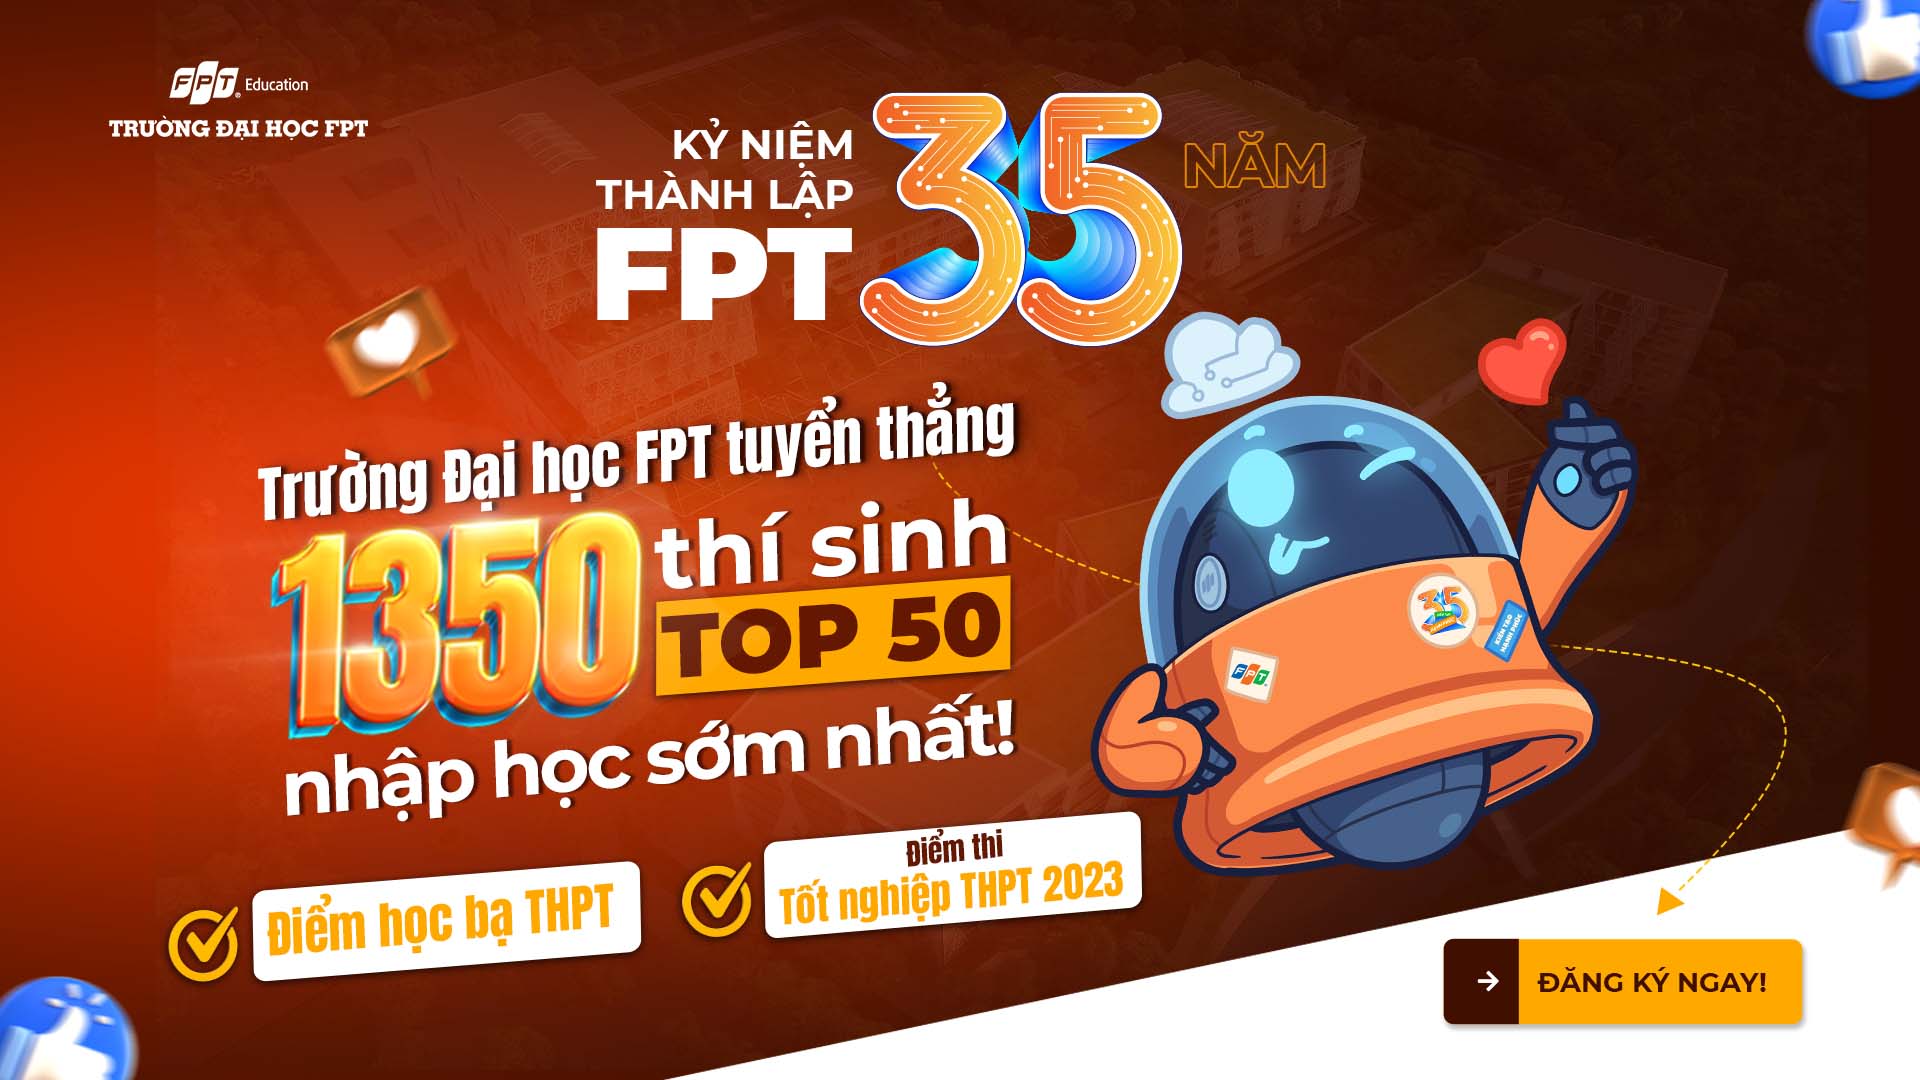 Kỷ niệm 35 năm thành lập FPT, Trường Đại học FPT tuyển thẳng 1350 thí sinh TOP50 nhập học sớm nhất